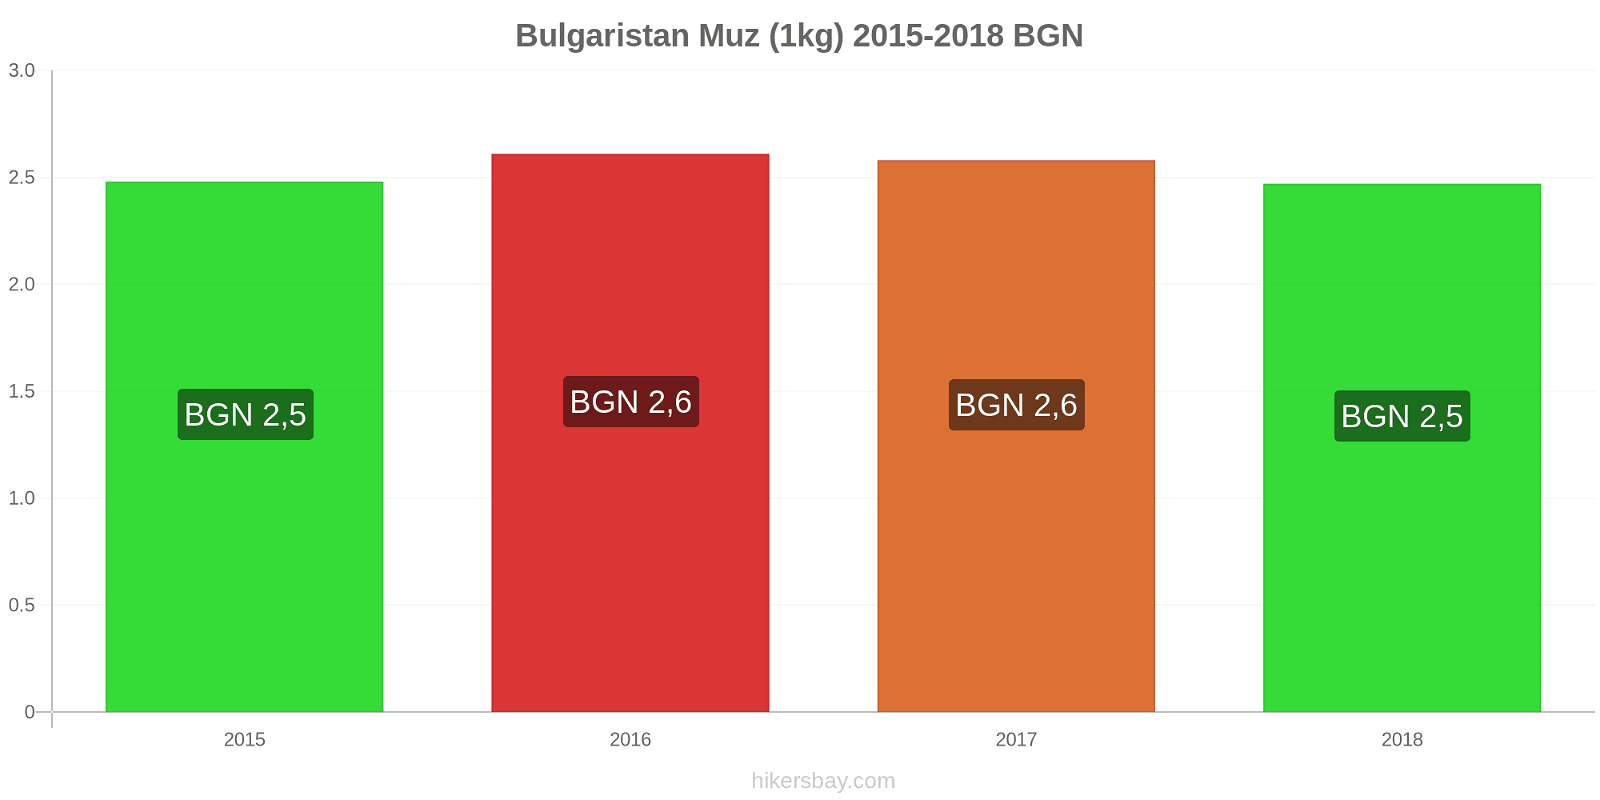 Bulgaristan fiyat değişiklikleri Muzlar (1kg) hikersbay.com